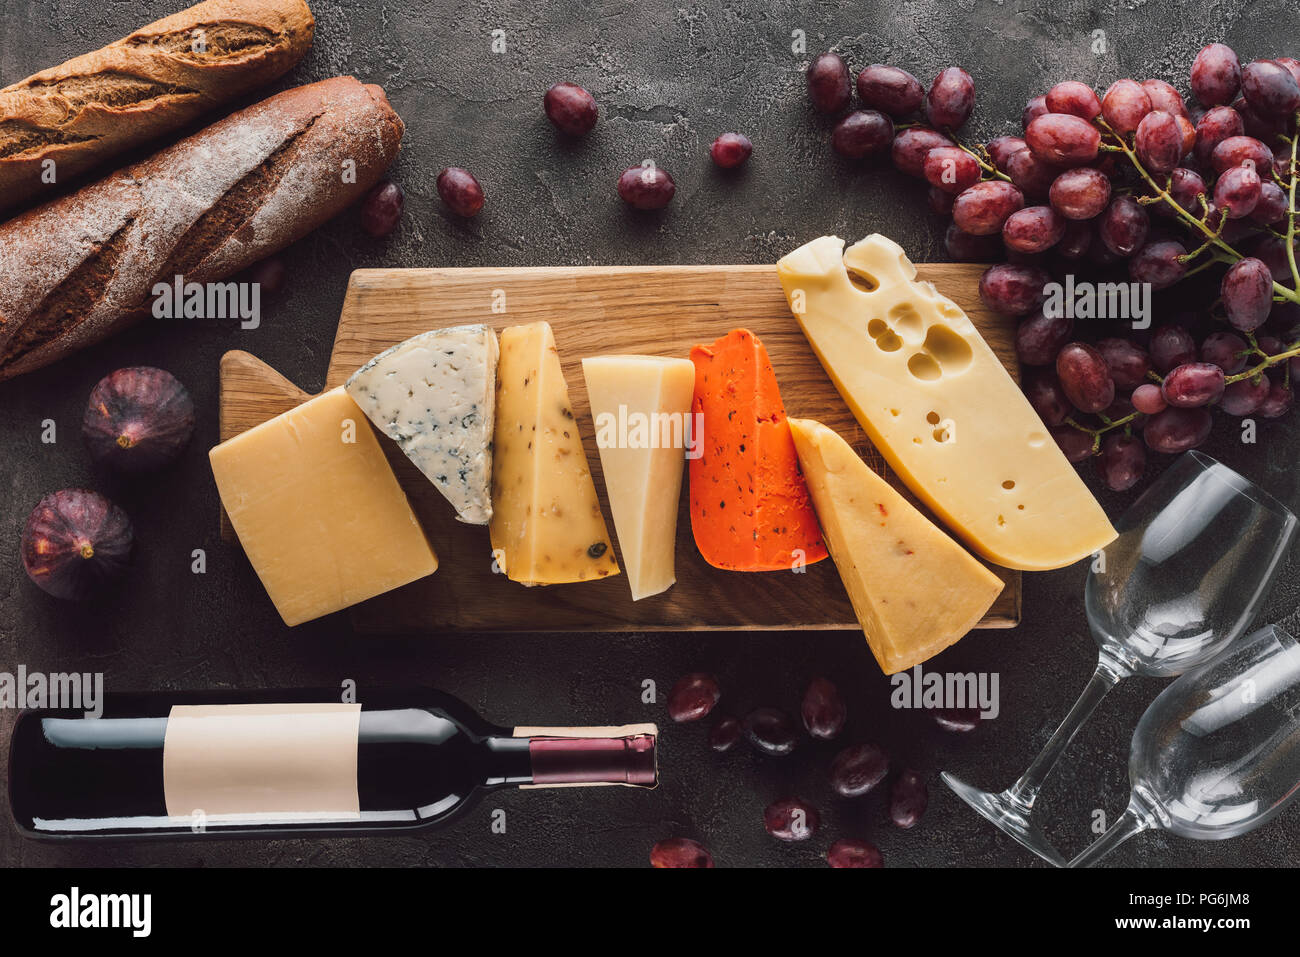 Mise à plat avec des baguettes, assortiment de fromage, bouteille de vin et des fruits sur la table sombre Banque D'Images